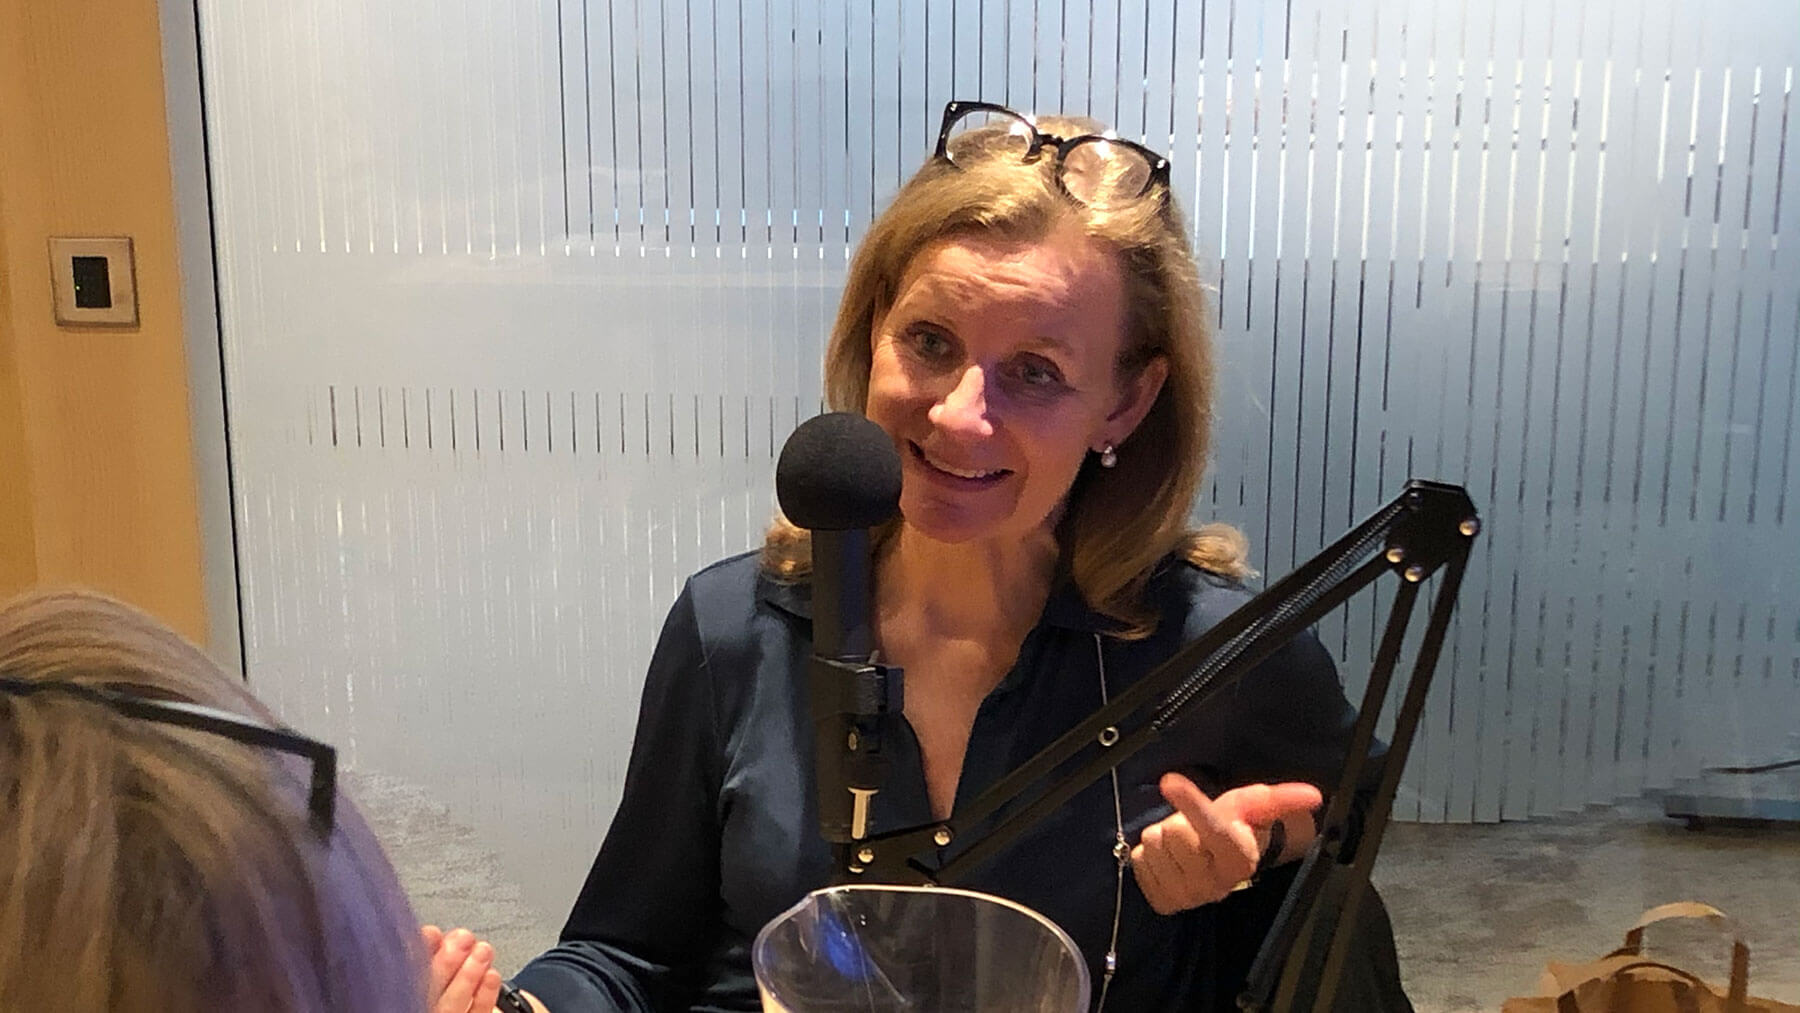 Hélène Barnekow, vd Microsoft Sverige, intervjuas för podcasten Chef Dilemma av Cissi Elwin.